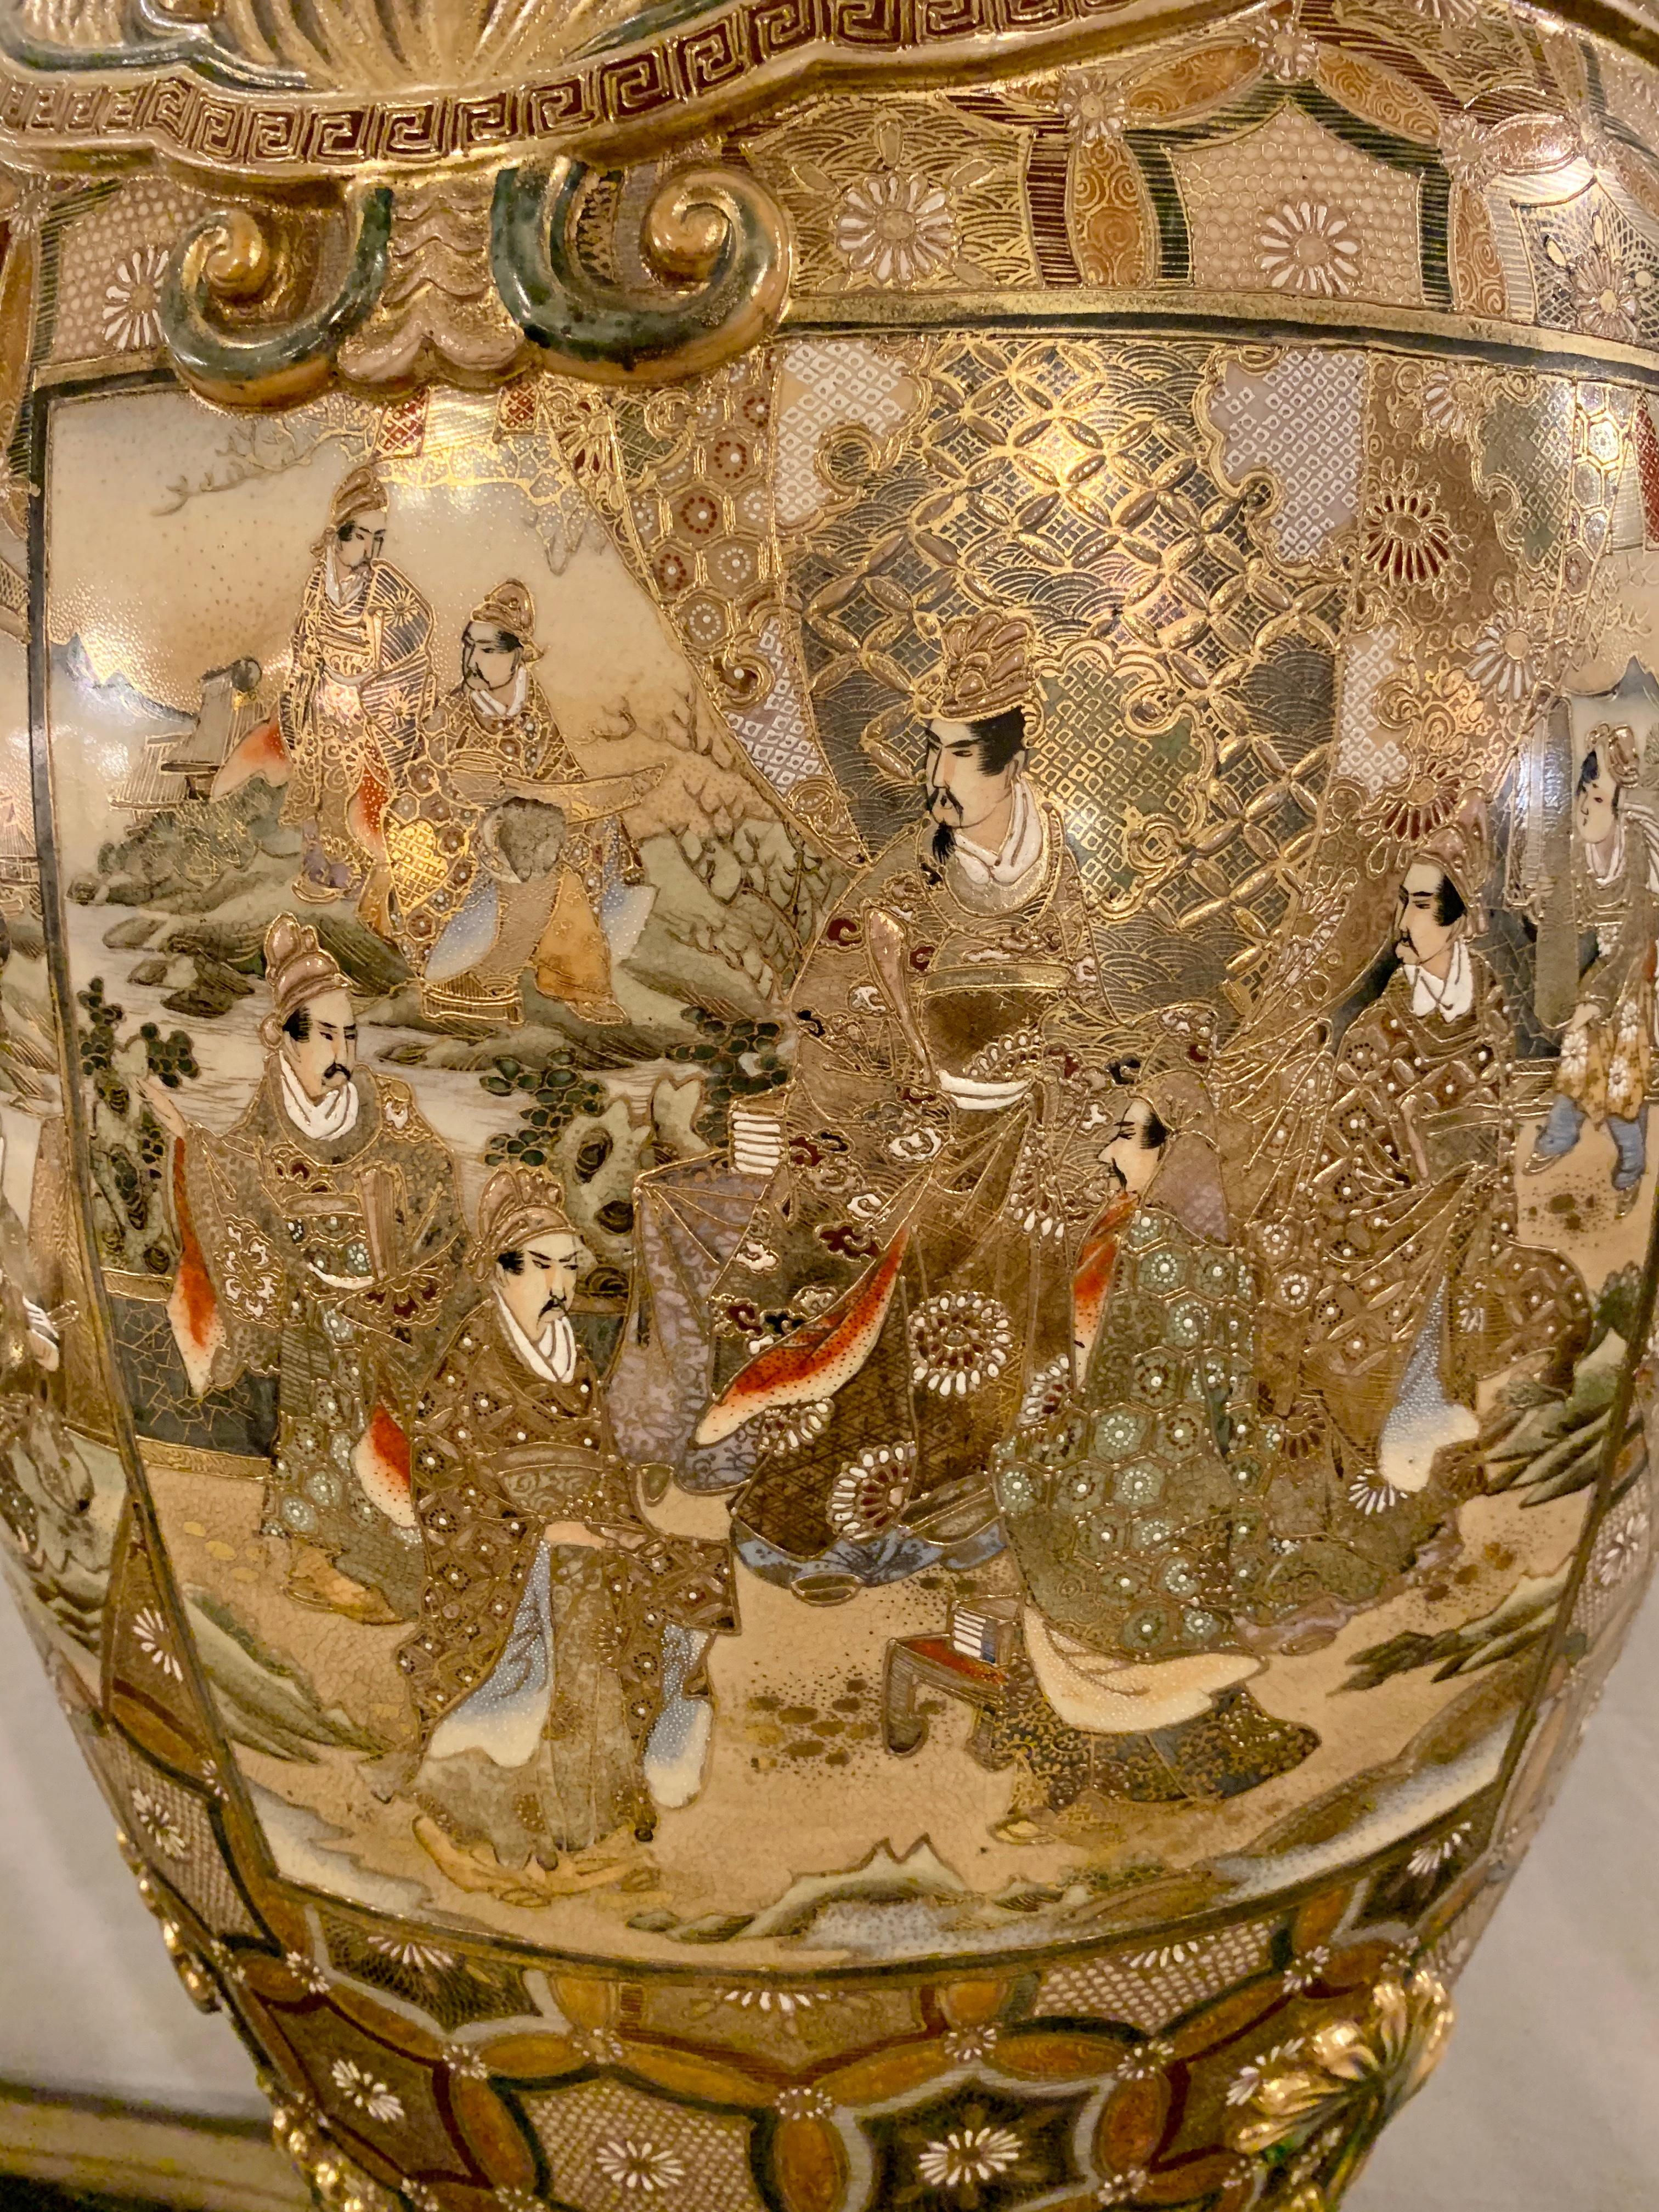 Satsuma Thousand Face Vase or Urn Palace Sized Twin Handled 11